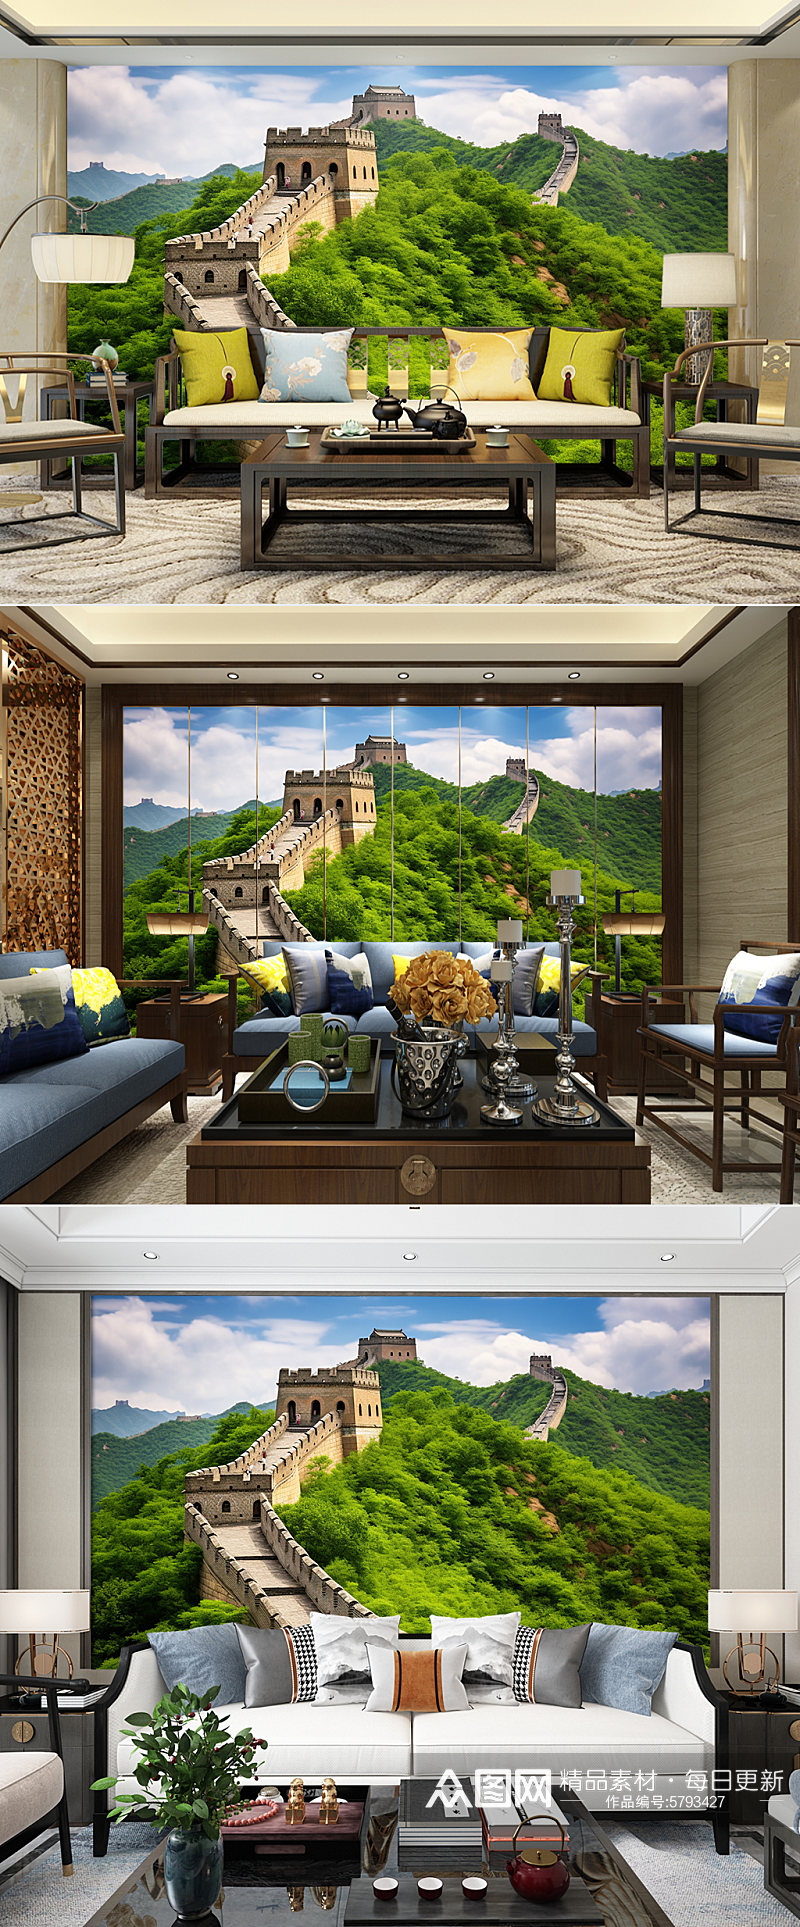 北京春天长城风景装饰画电视背景墙素材